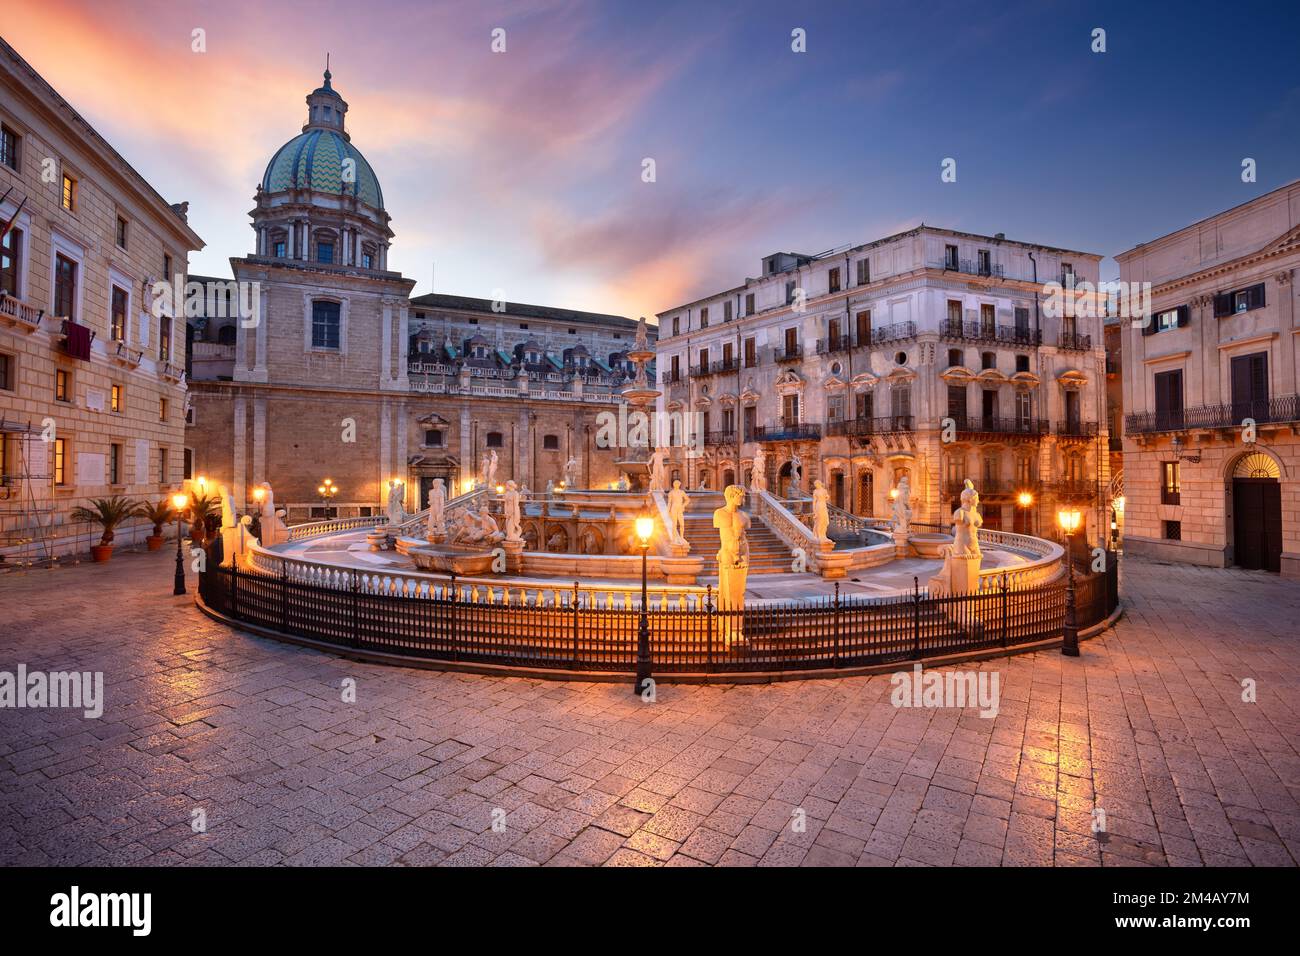 Palerme, Sicile, Italie. Image citadine de Palerme, Sicile avec la célèbre fontaine prétorienne située sur la Piazza Pretoria au coucher du soleil. Banque D'Images